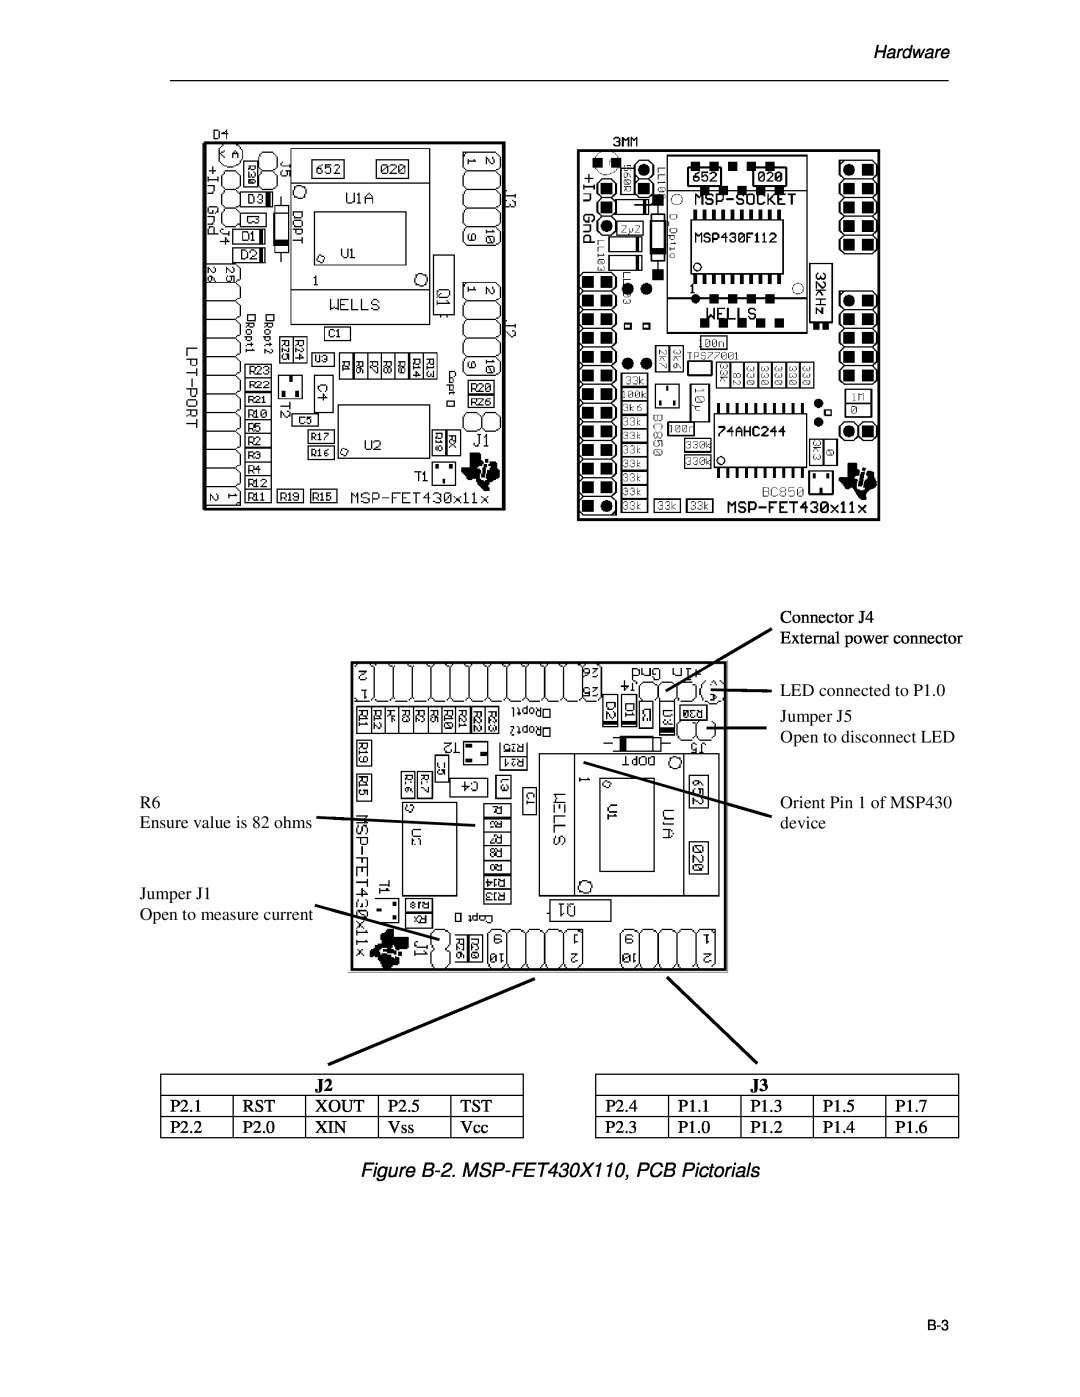 Texas Instruments manual Figure B-2. MSP-FET430X110, PCB Pictorials, Hardware 